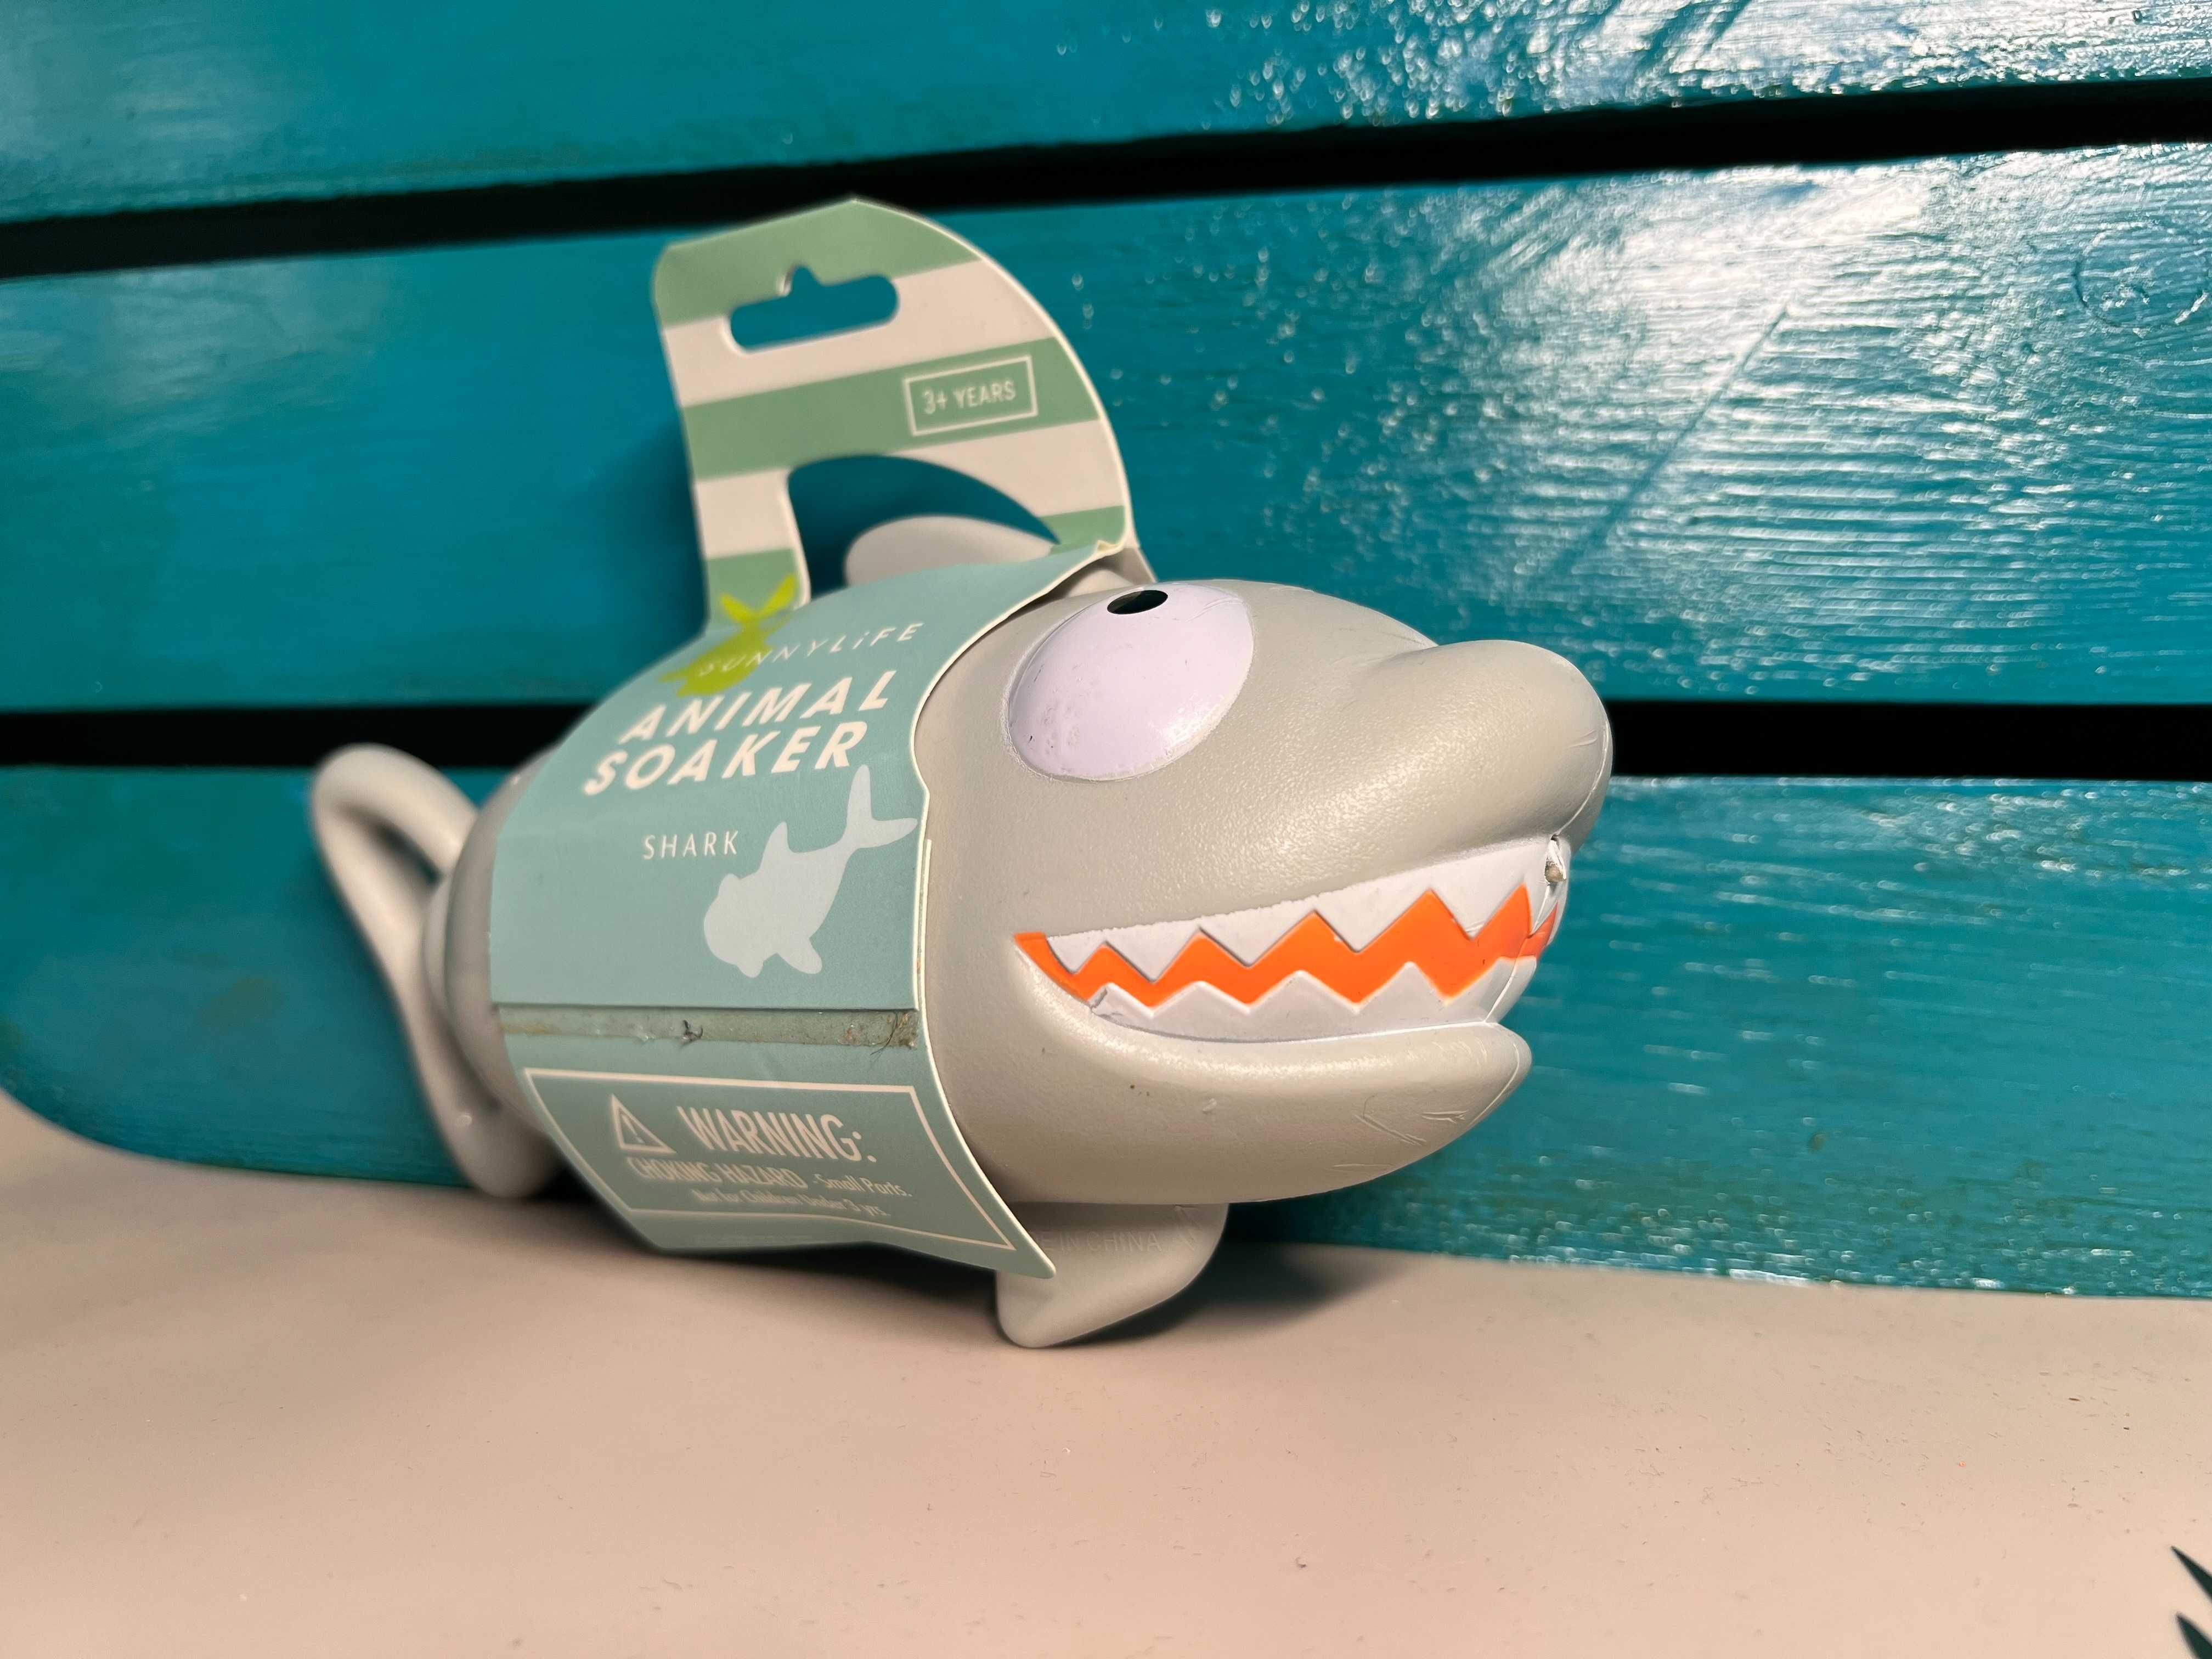 SunnyLife psikawka do basenu Animal Soaker Shark Rekin dziecko zabawka